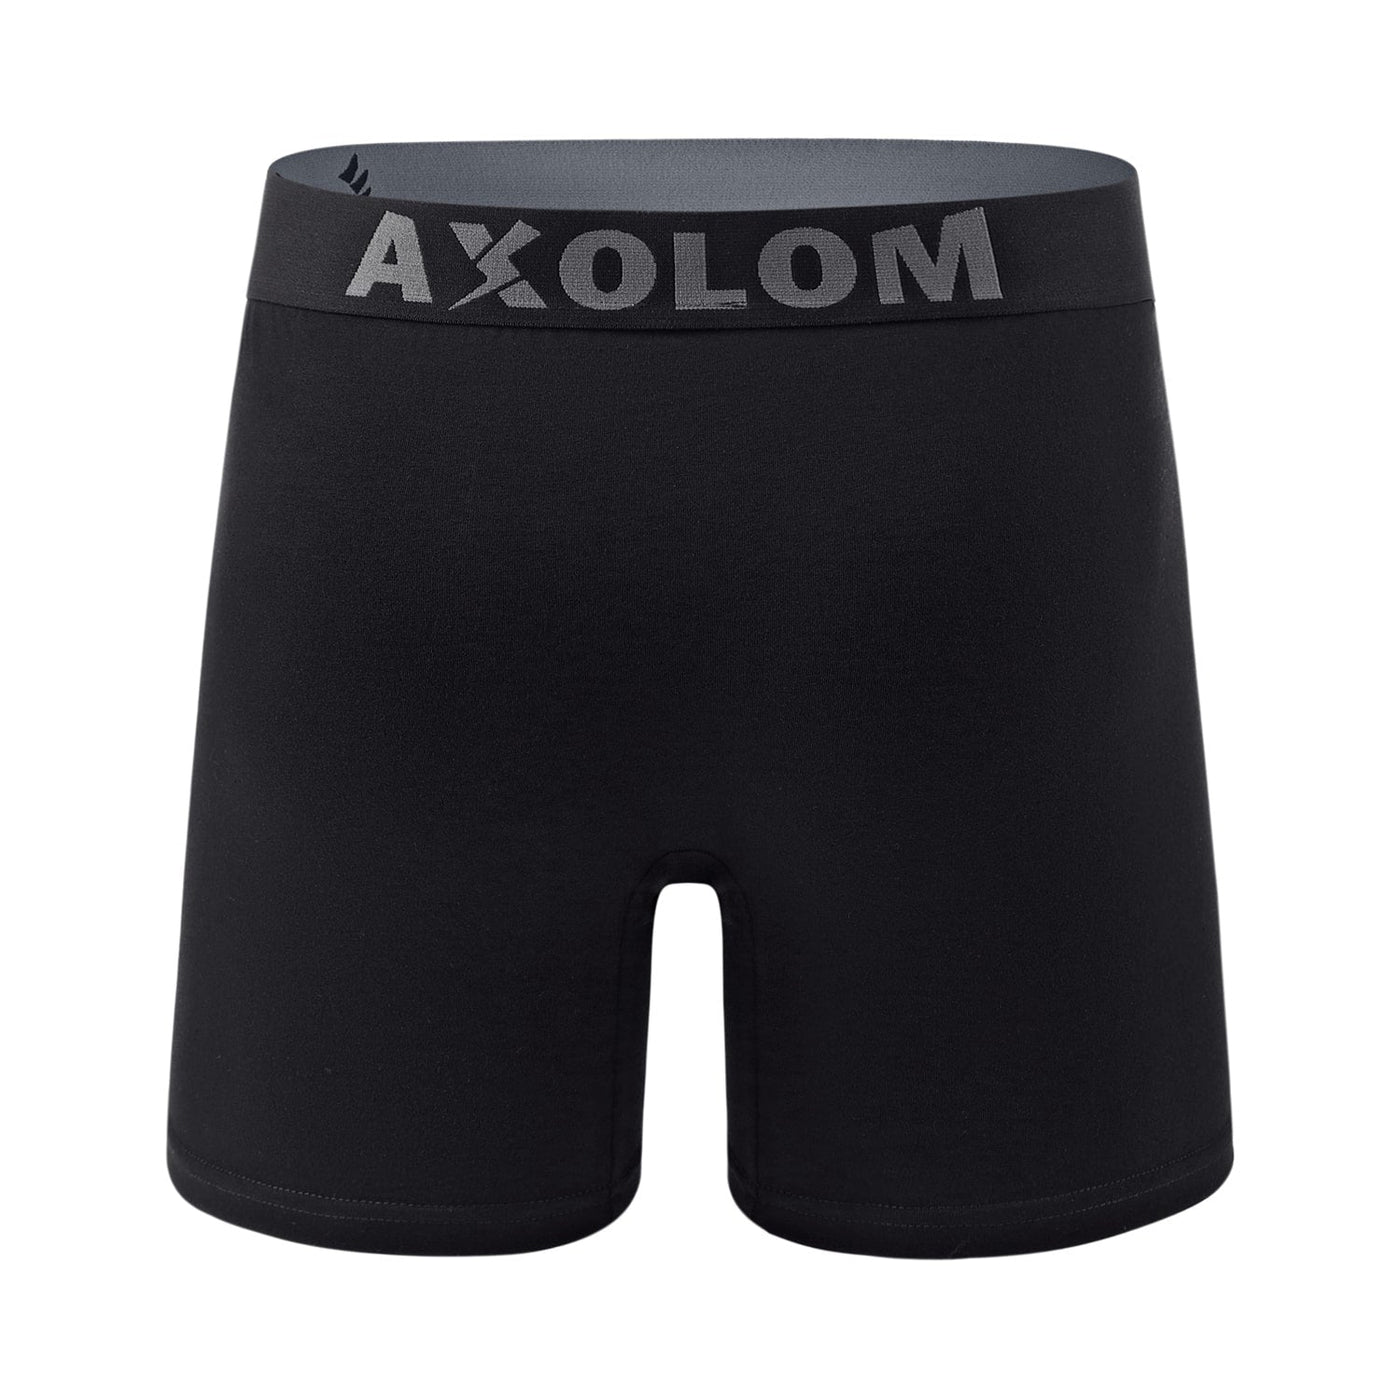 AOMUO LM01 FTM Packer Underwear